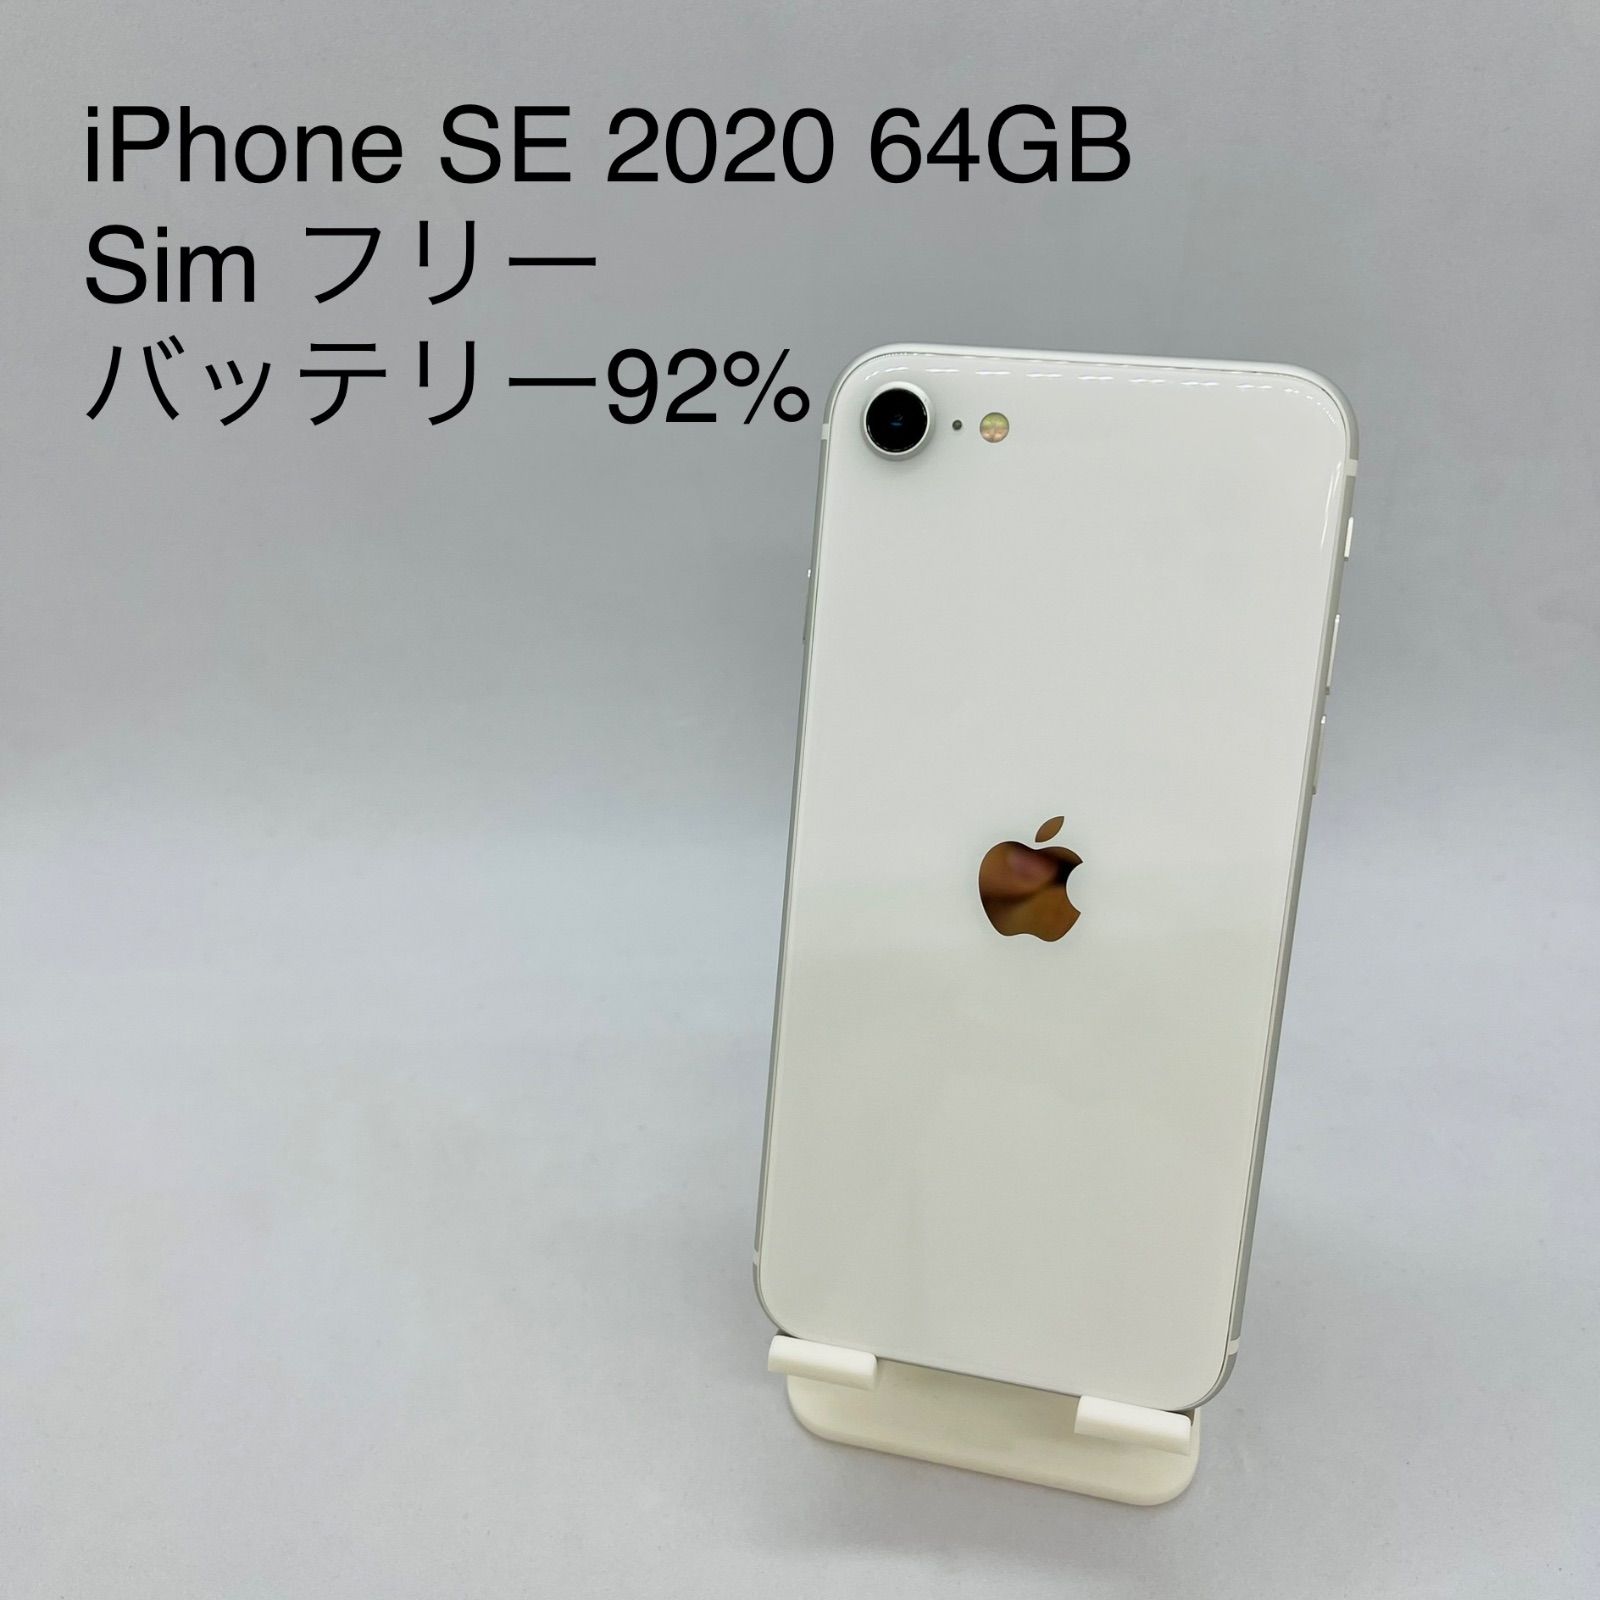 iPhone SE 2020 64GB Sim フリー - メルカリ